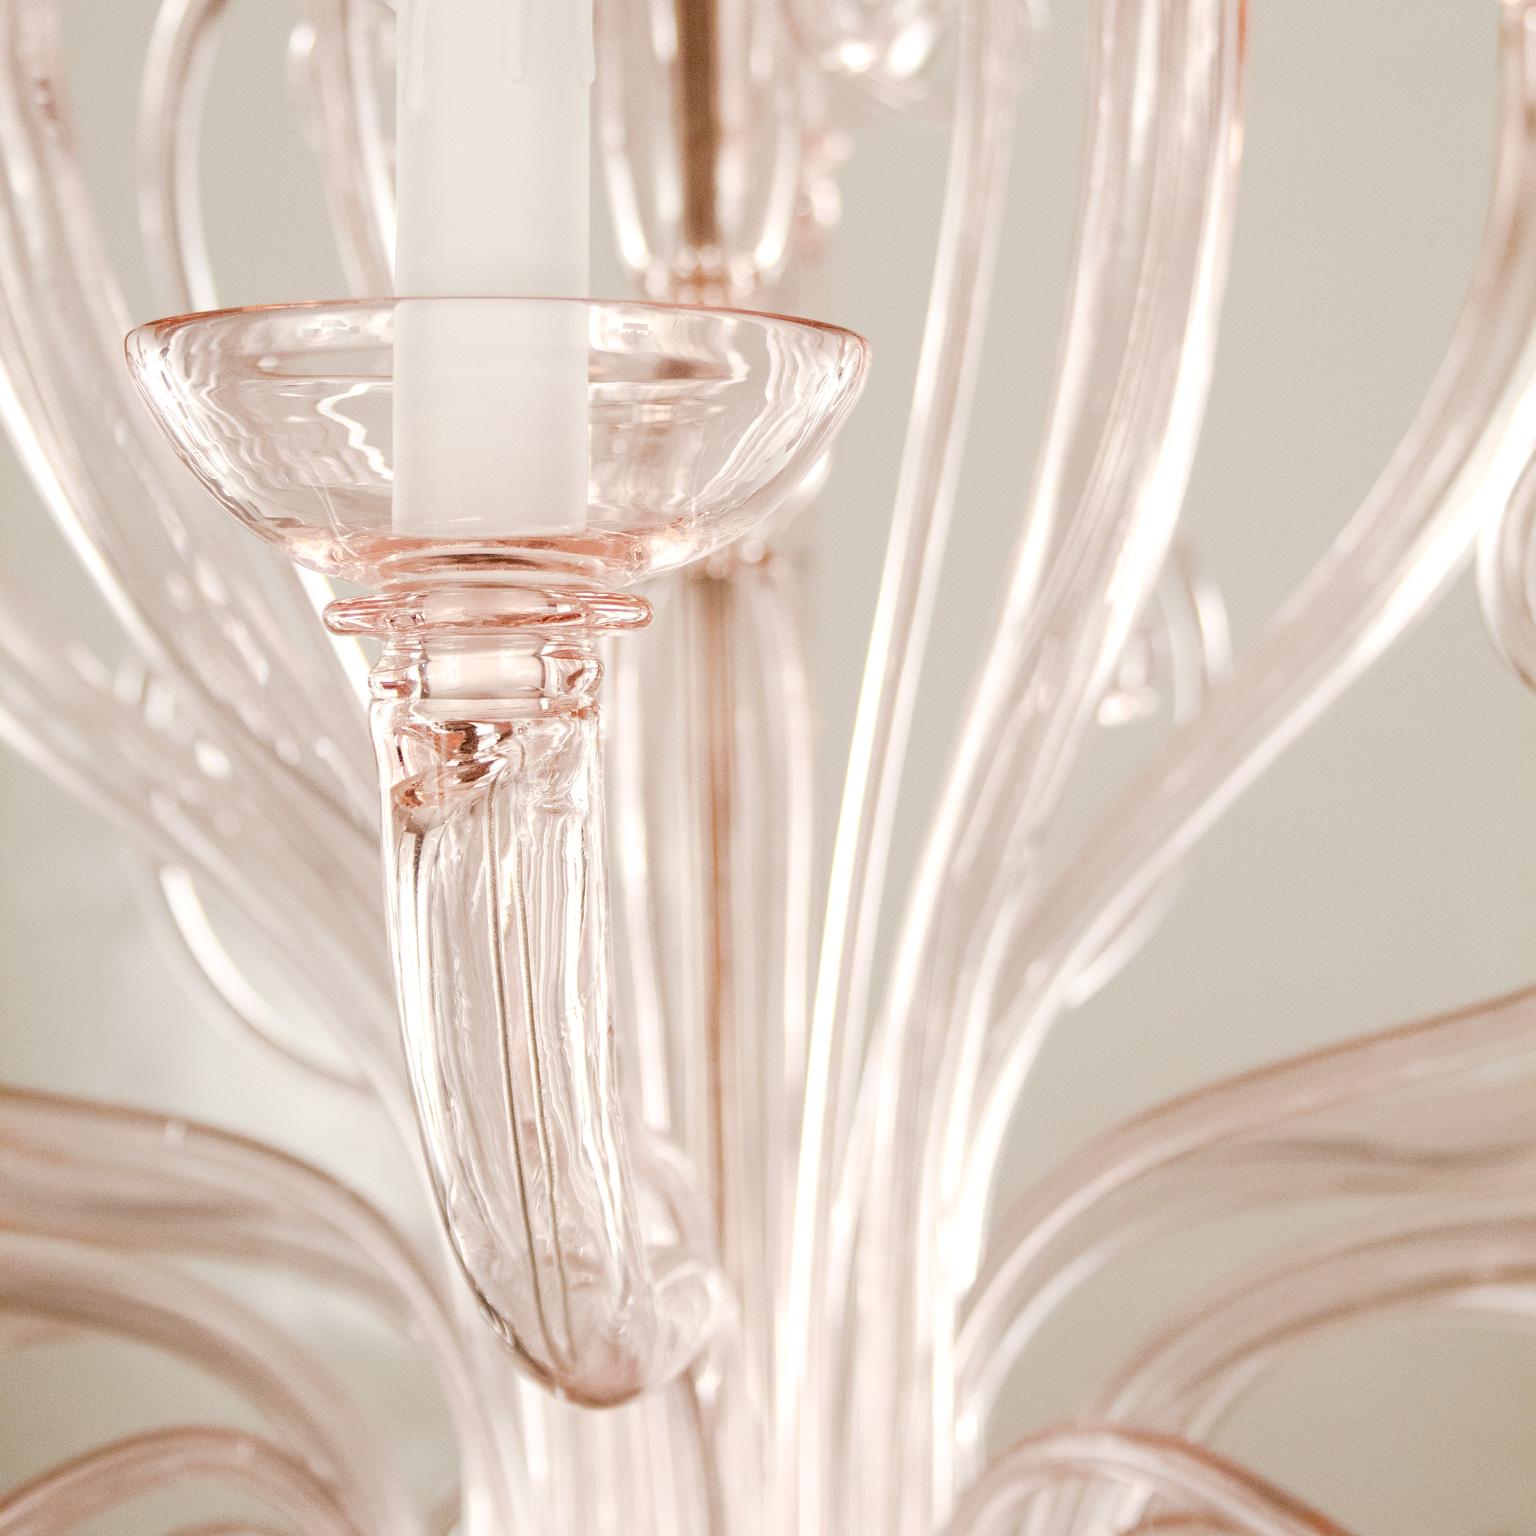 Melisanda est un lustre en verre vénitien caractérisé par une teinte rose romantique et délicate. C'est l'un des nouveaux produits d'éclairage de Multiforme ; il s'inspire du design des lustres classiques, mais en y ajoutant quelque chose de